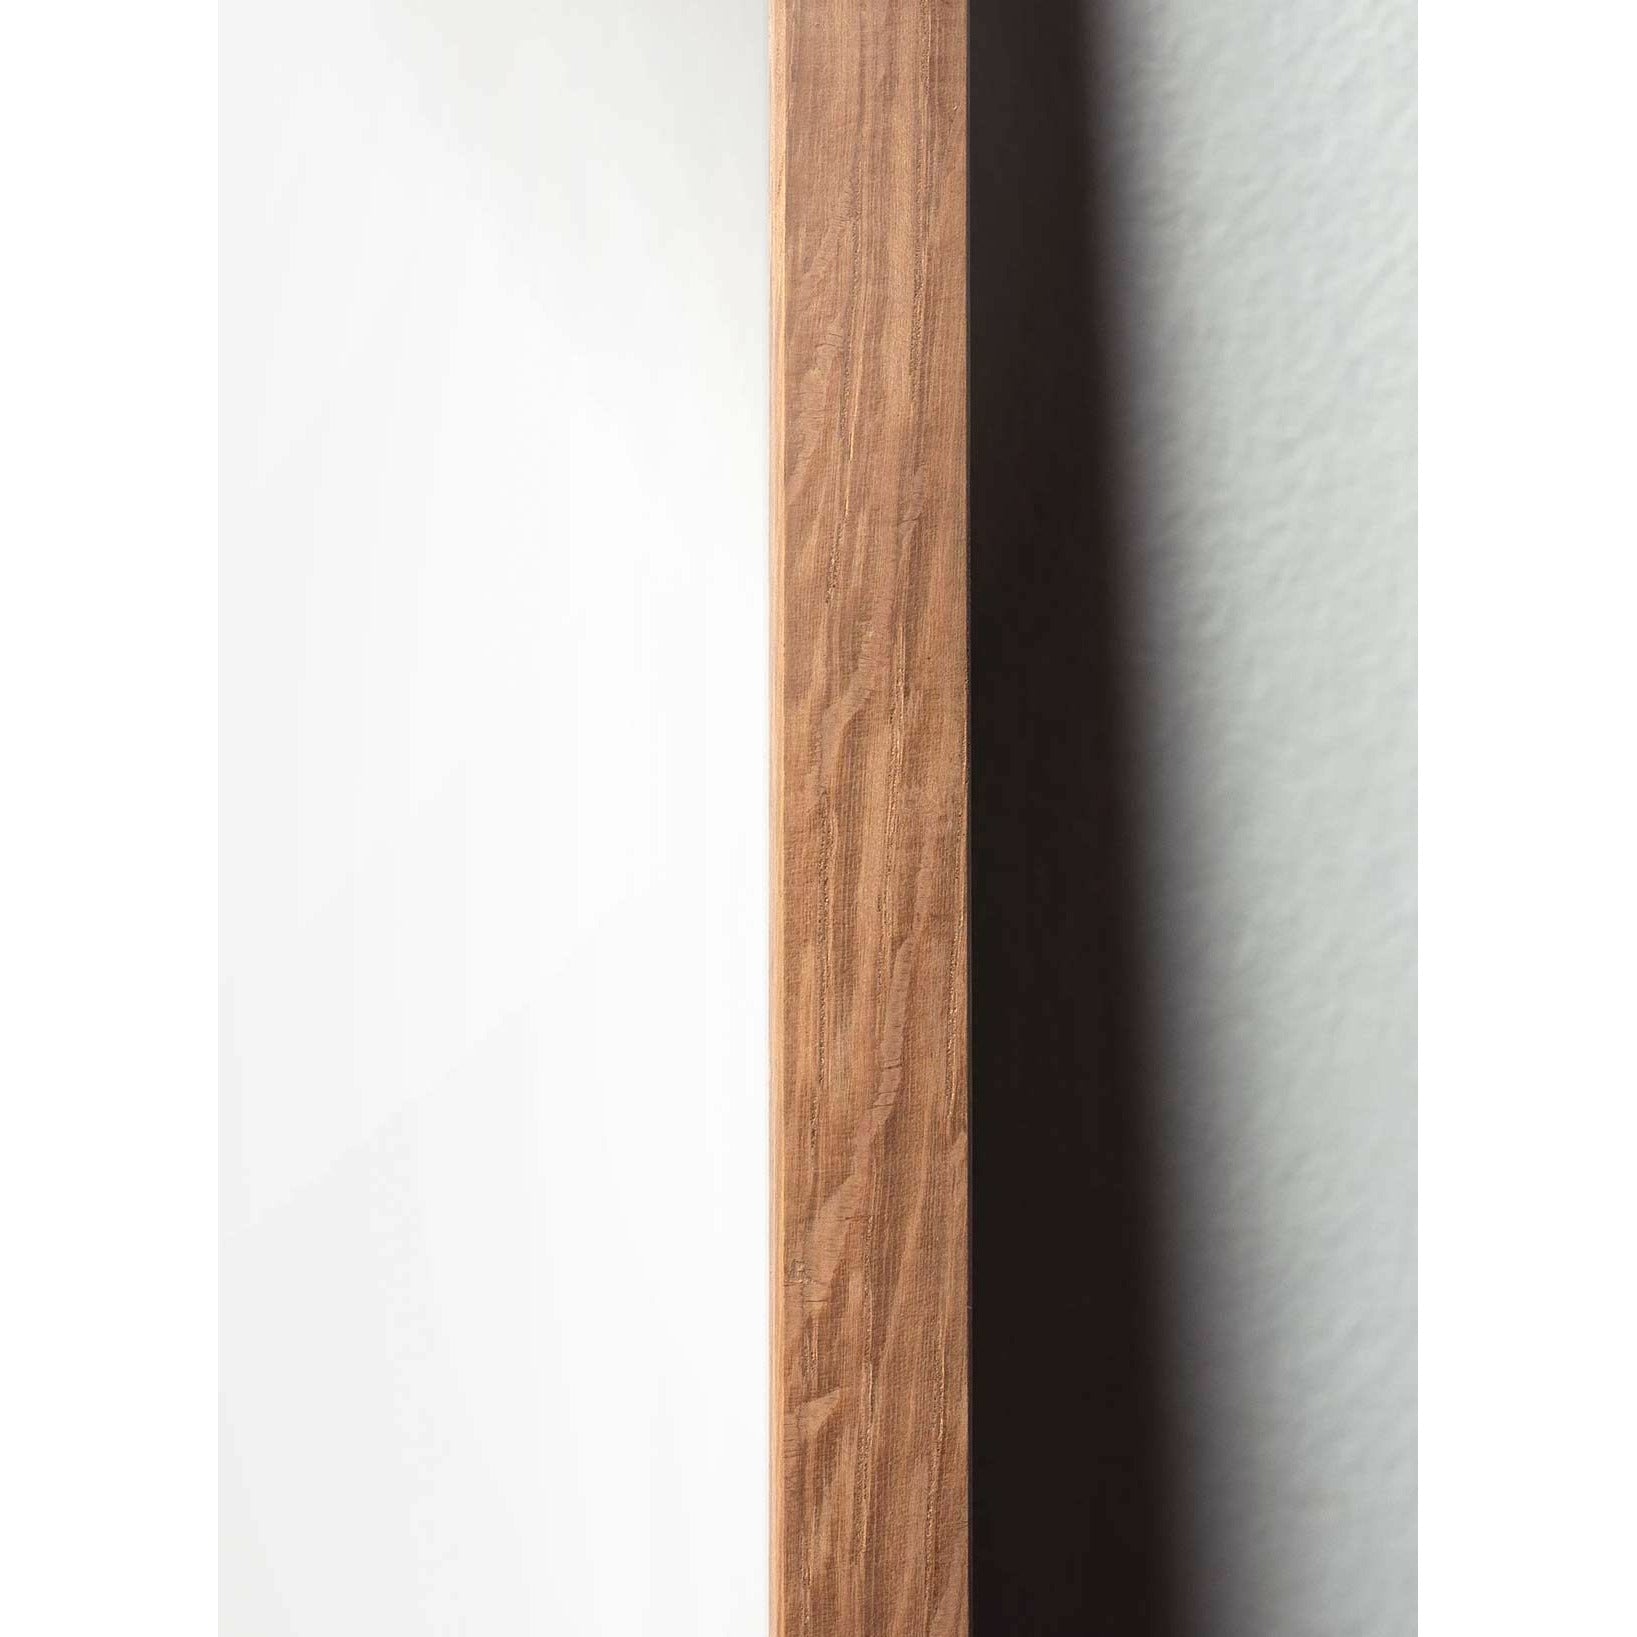 Póster clásico de cono de pino de creación, marco hecho de madera clara de 30x40 cm, fondo blanco